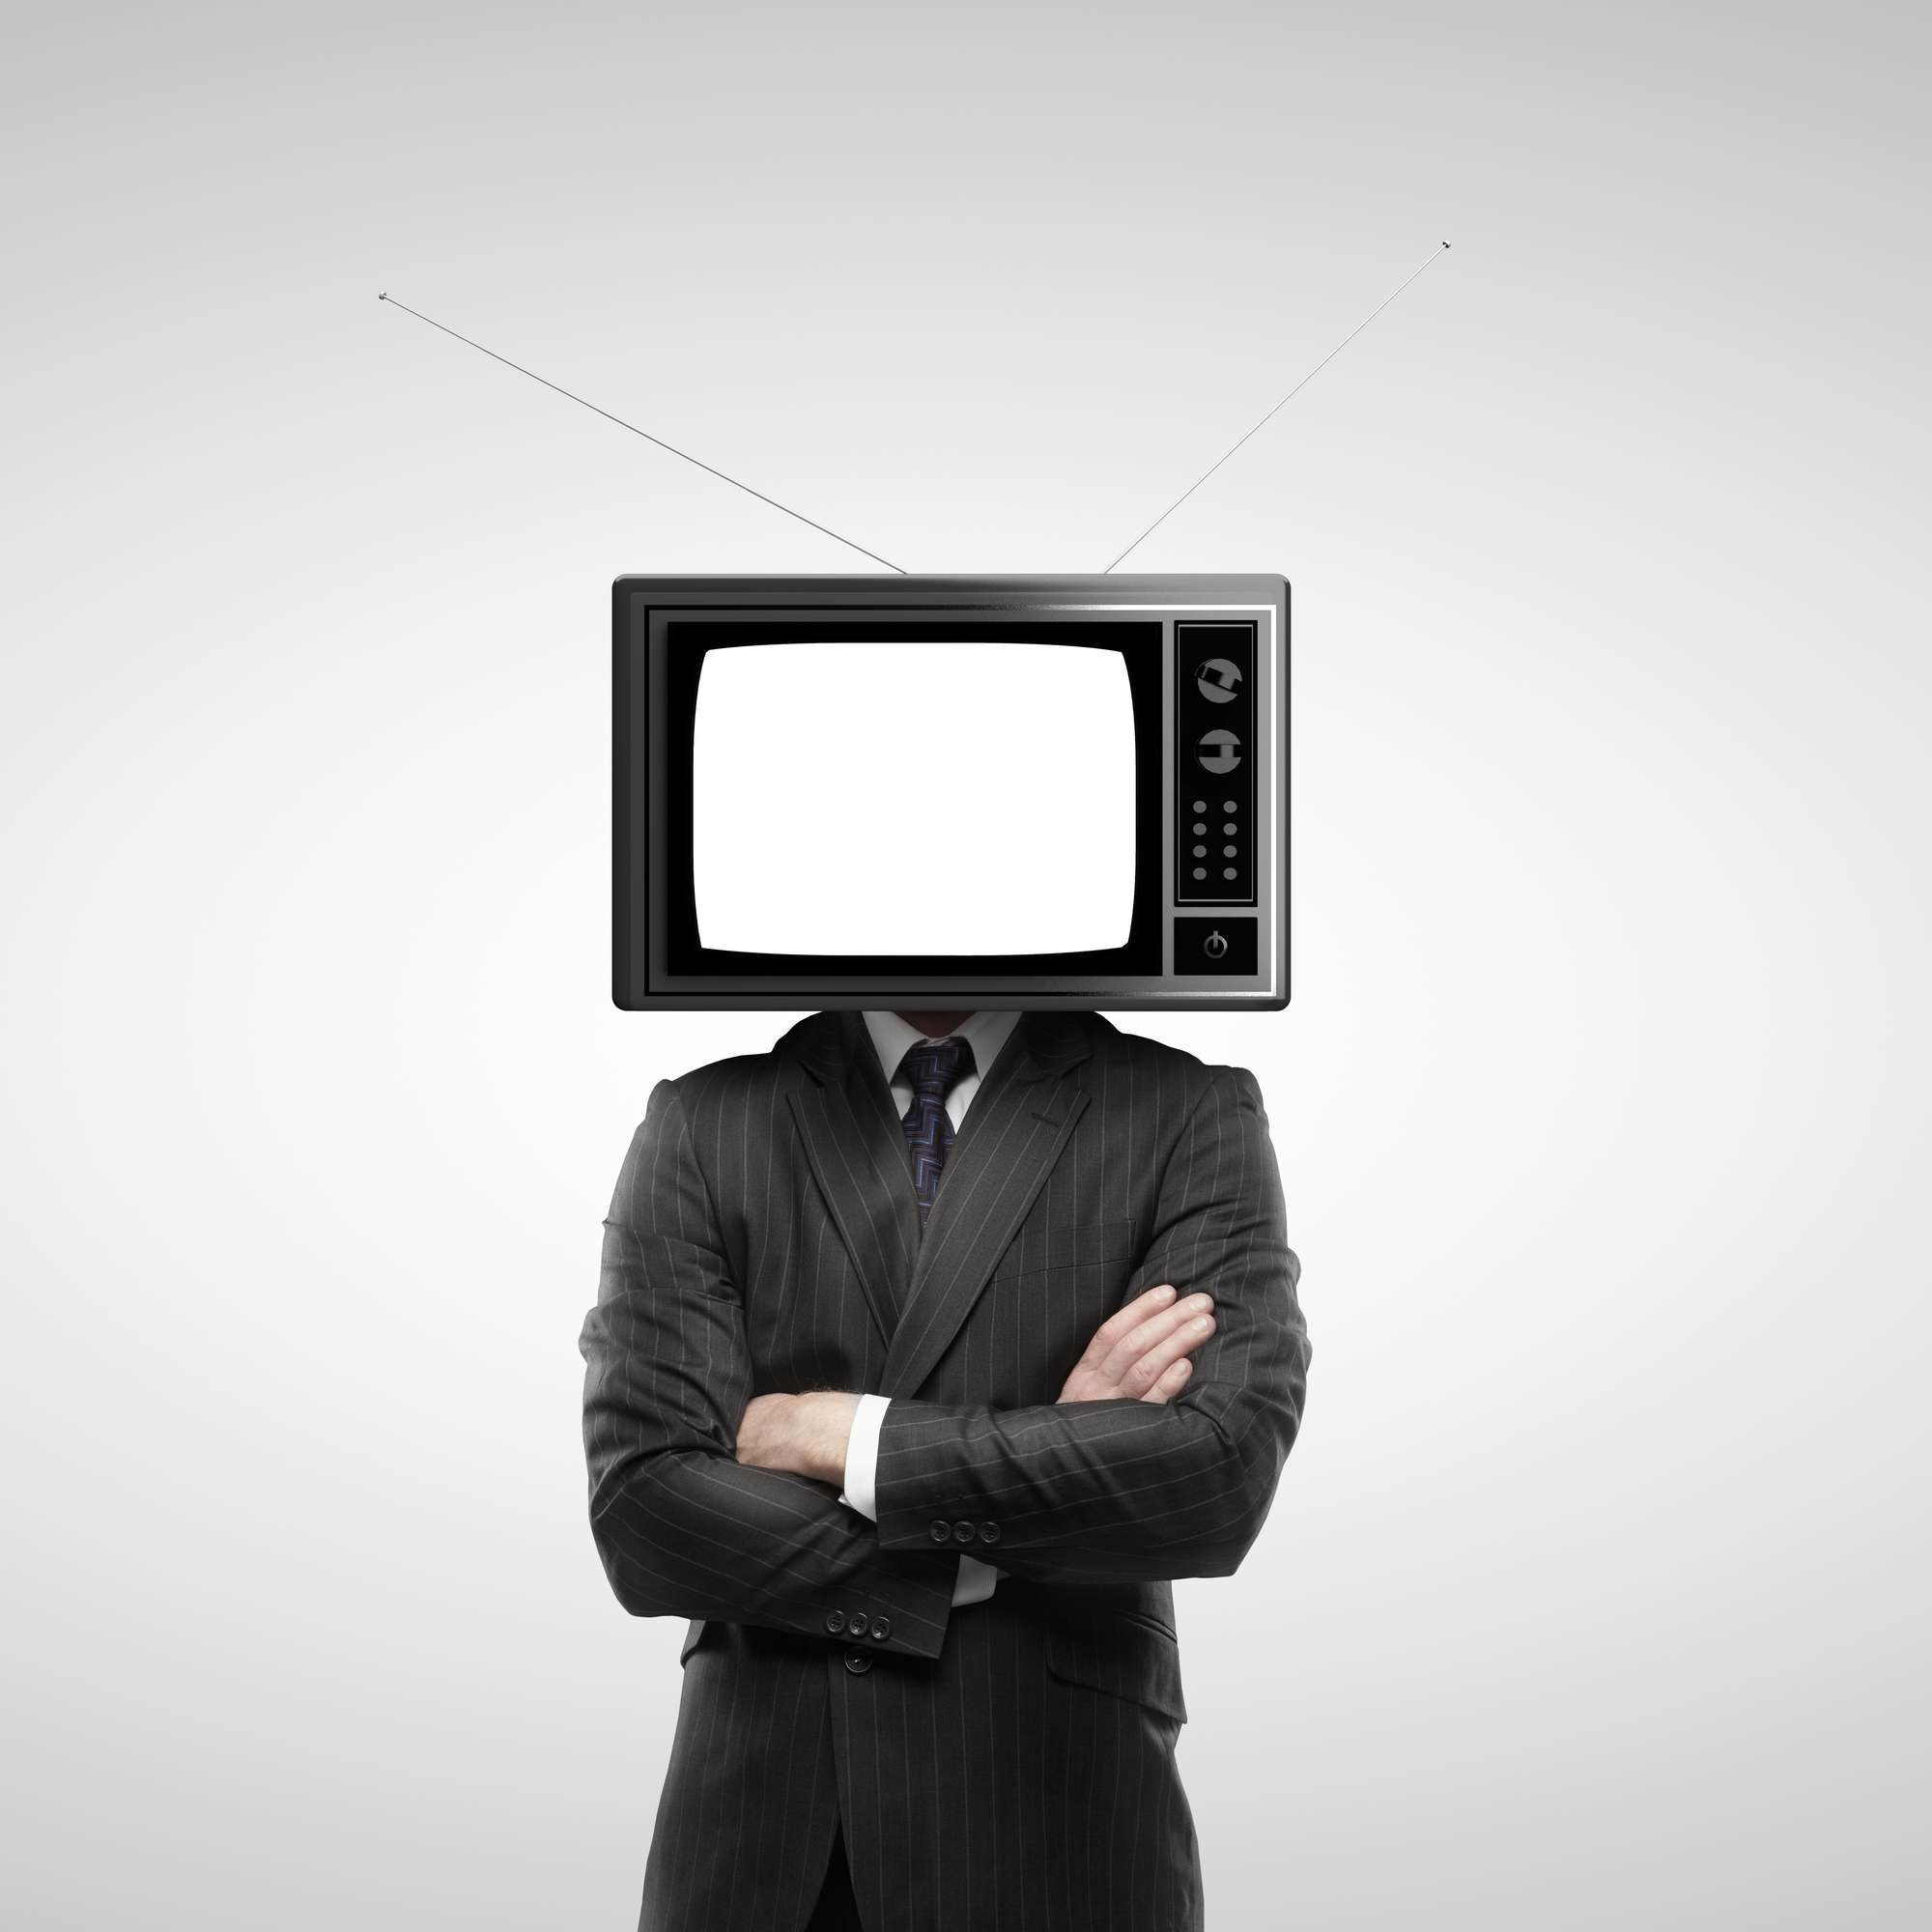 Tv man купить. Телевизор вместо головы. Голова телевизор. Человек телевизор. Человек с телевизором вместо головы.